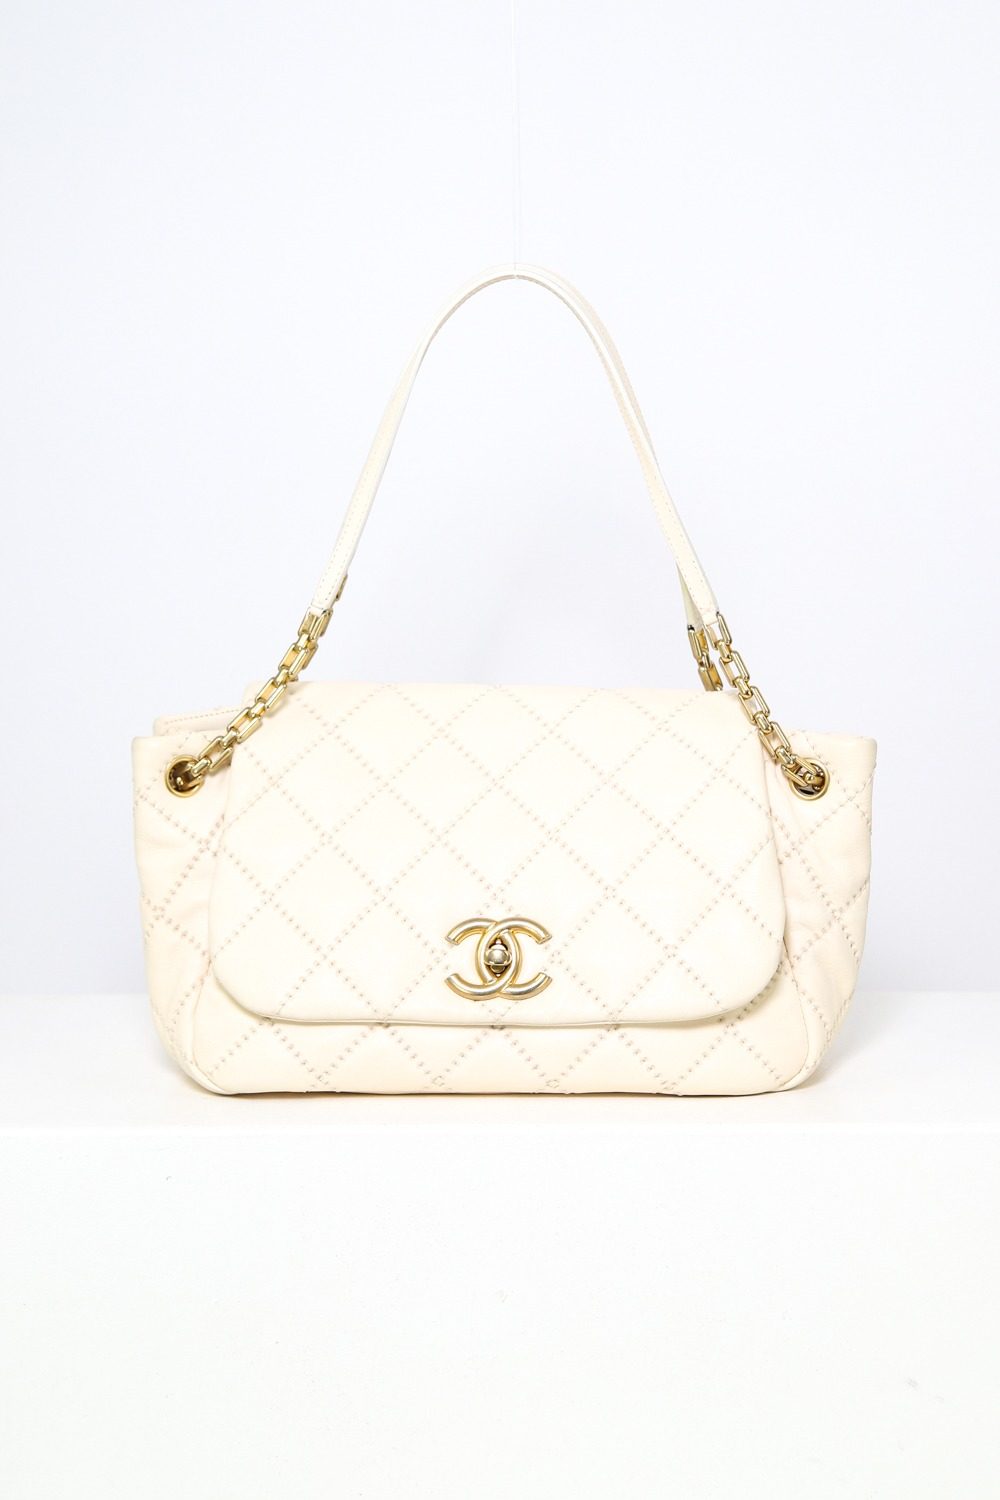 Chanel "Stitch Flap Bag" in Ecru